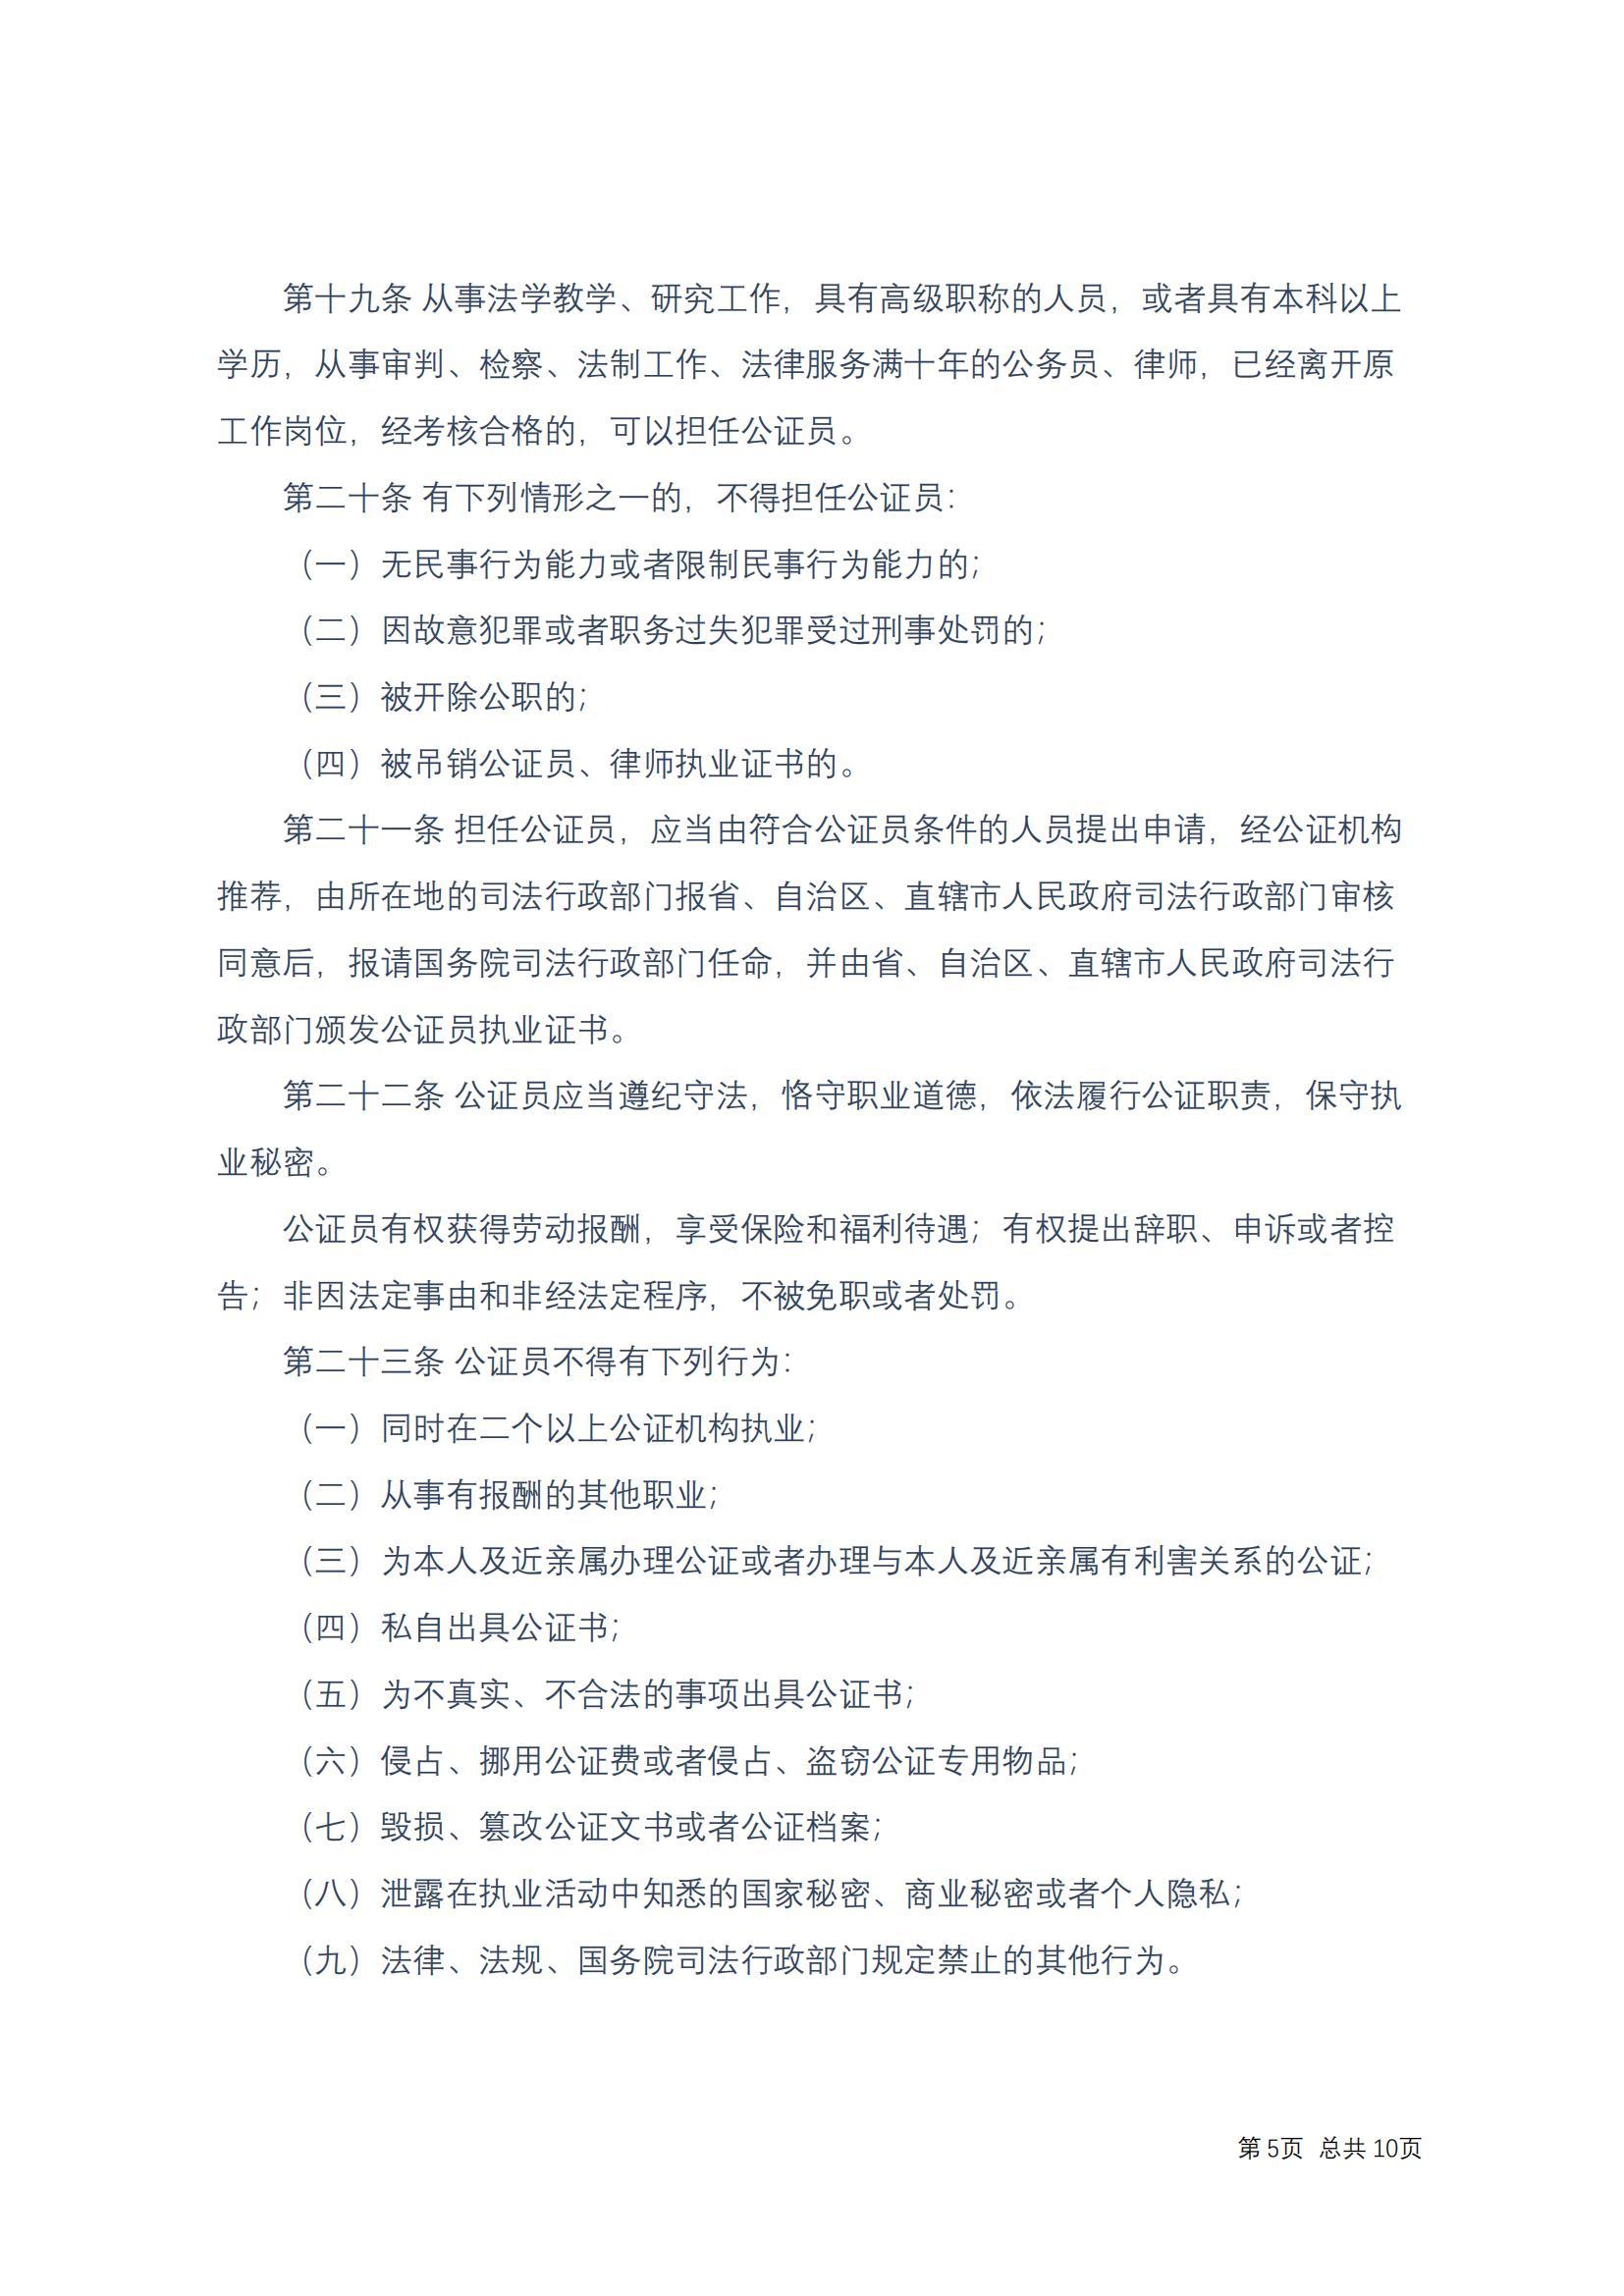 中华人民共和国公证法(2017修正)修改过_04